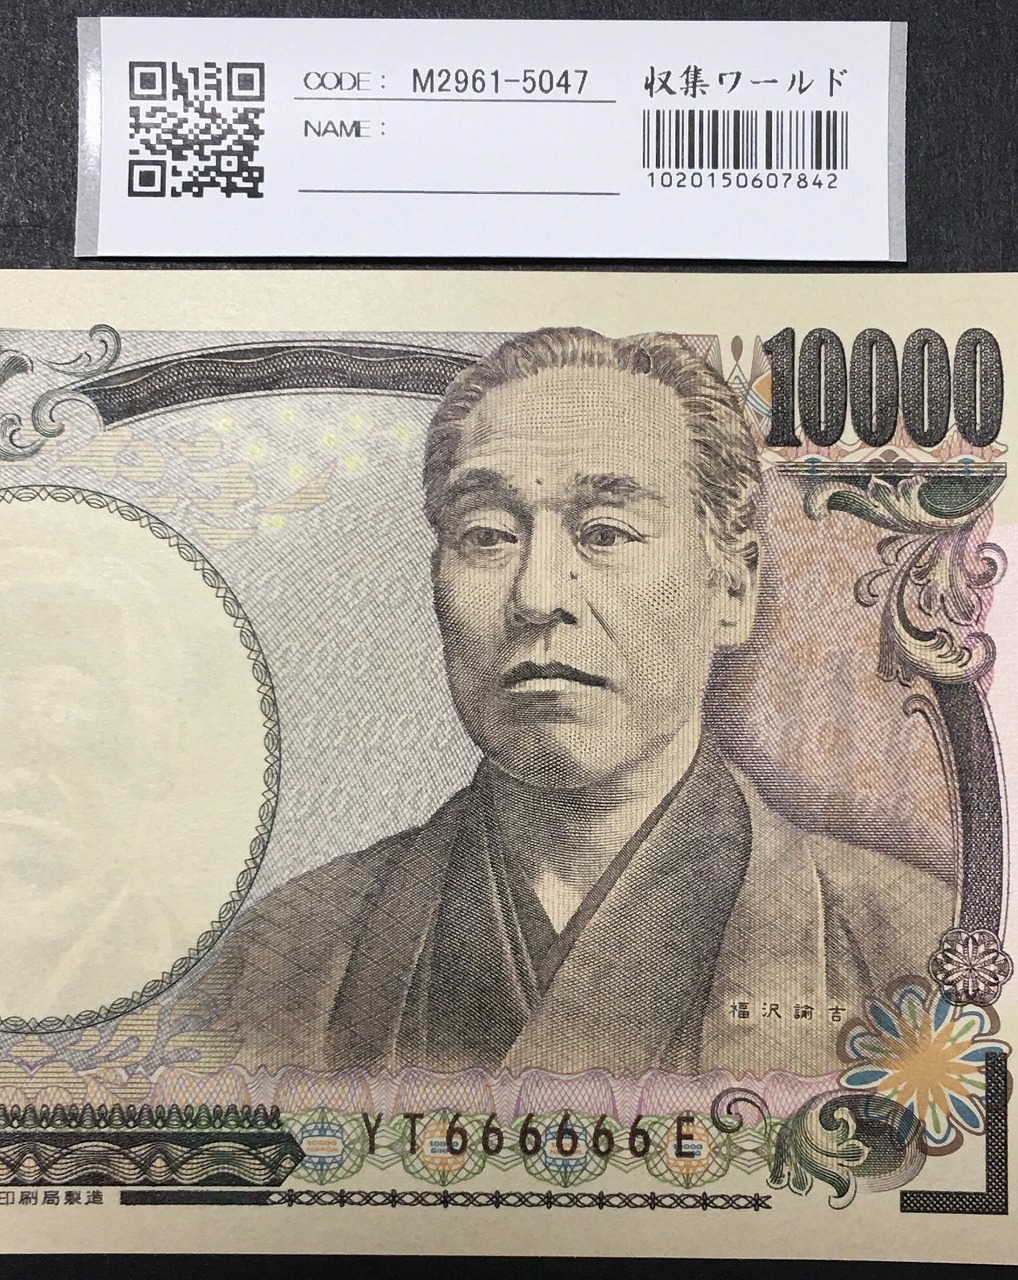 新福沢 1万円紙幣 国立印刷局 褐色 珍番 YT666666E 完未品